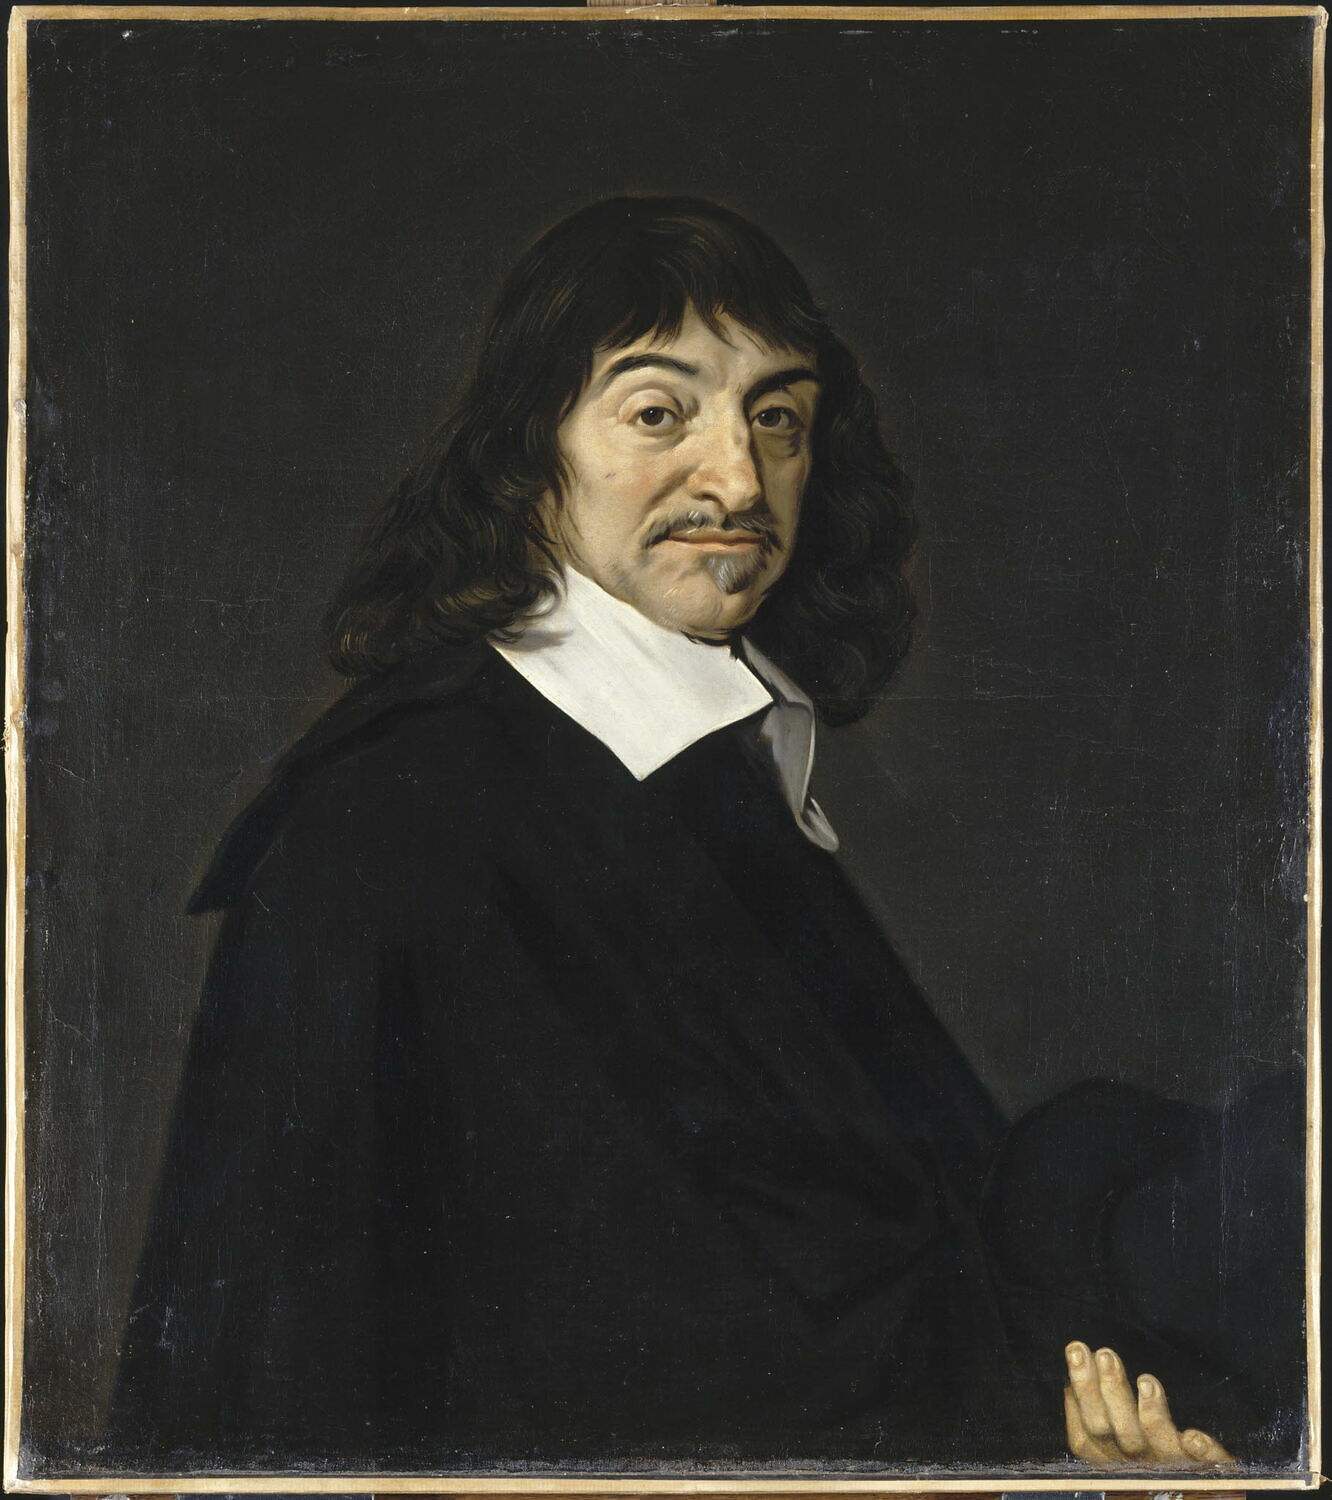 Frans Hal (d’après), Portrait de René Descartes, huile sur toile, 2 e quart du XVII e siècle, 78x69 cm, Musée du Louvre, Paris -  RMN – Grand Palais (Musée du Louvre) Tony Querrec